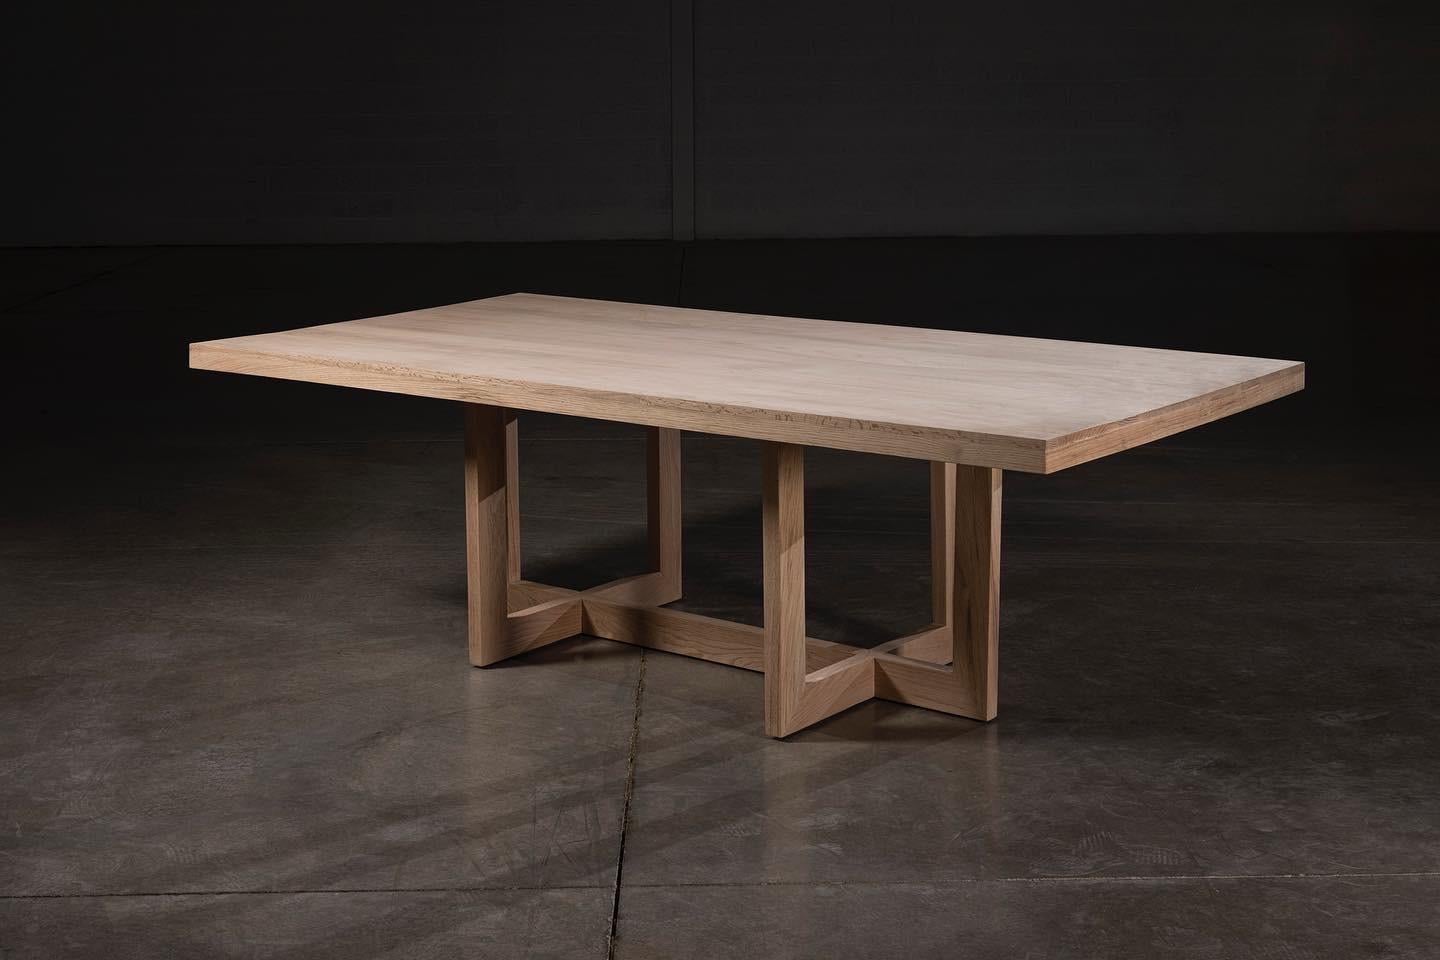 Dieser Tisch ist aus massiver, natürlicher Eiche, 100% handgefertigt von erfahrenen mexikanischen Handwerkern. 
Behält den organischen Ton der Eiche bei, mit einer massiven, schönen Tischplatte und einem spinnenartigen Sockel.